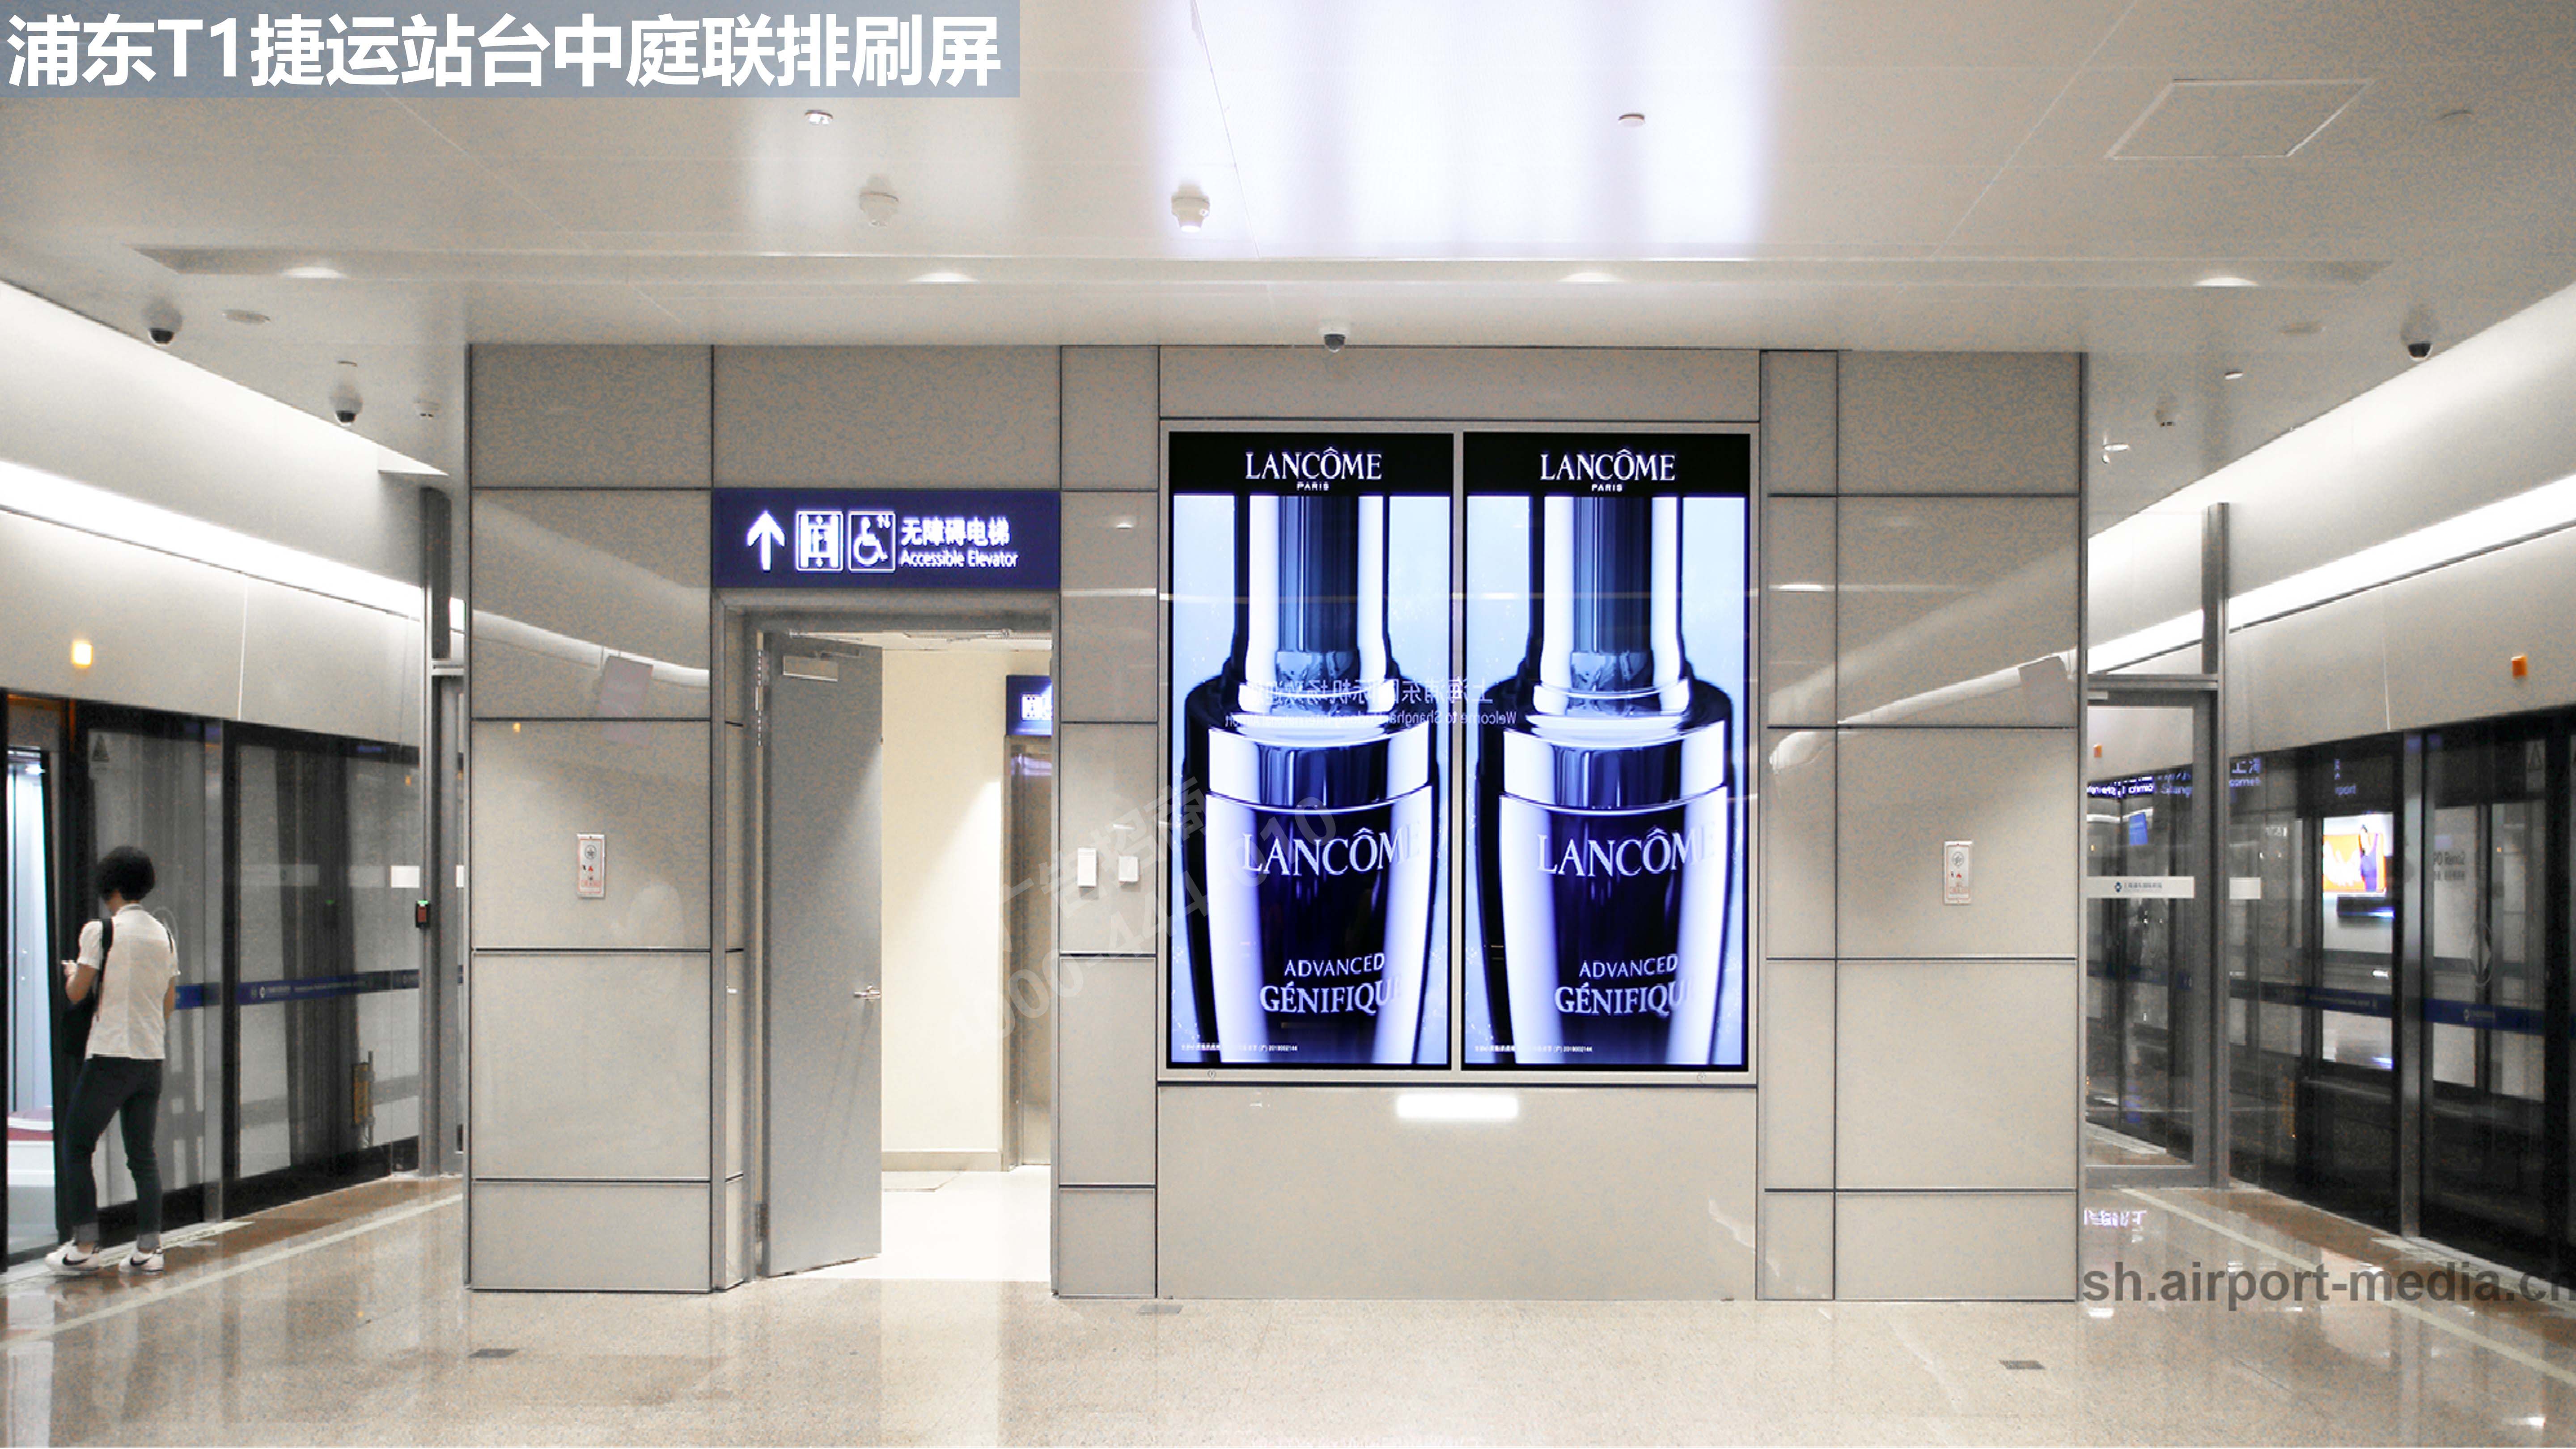 上海机场捷运台广告1